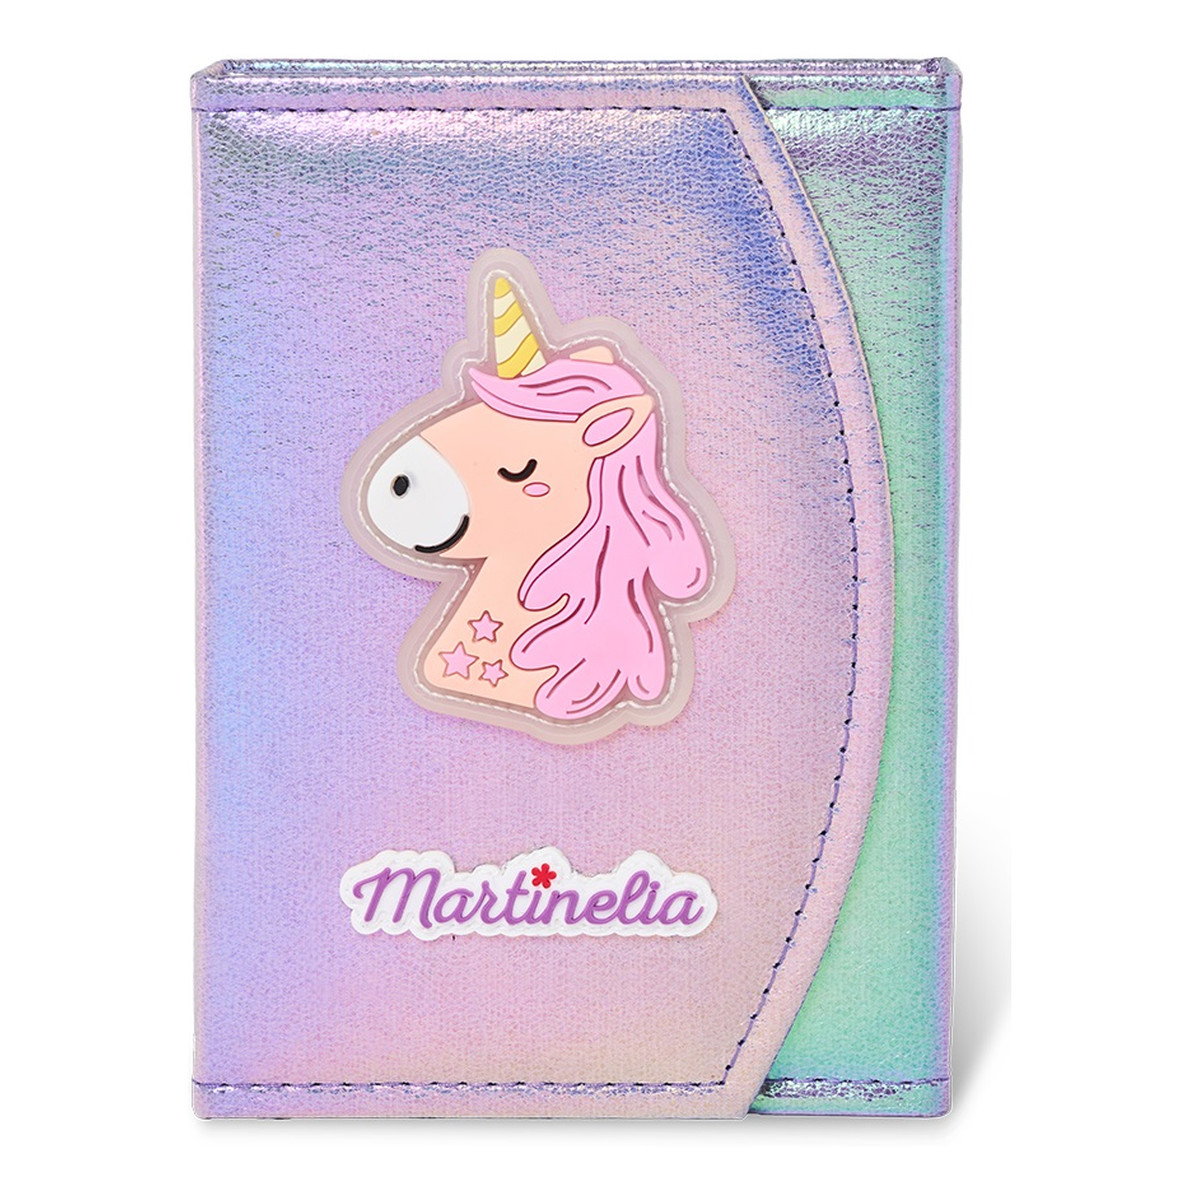 Martinelia Little unicorn paleta do makijażu dla dzieci w formie książki